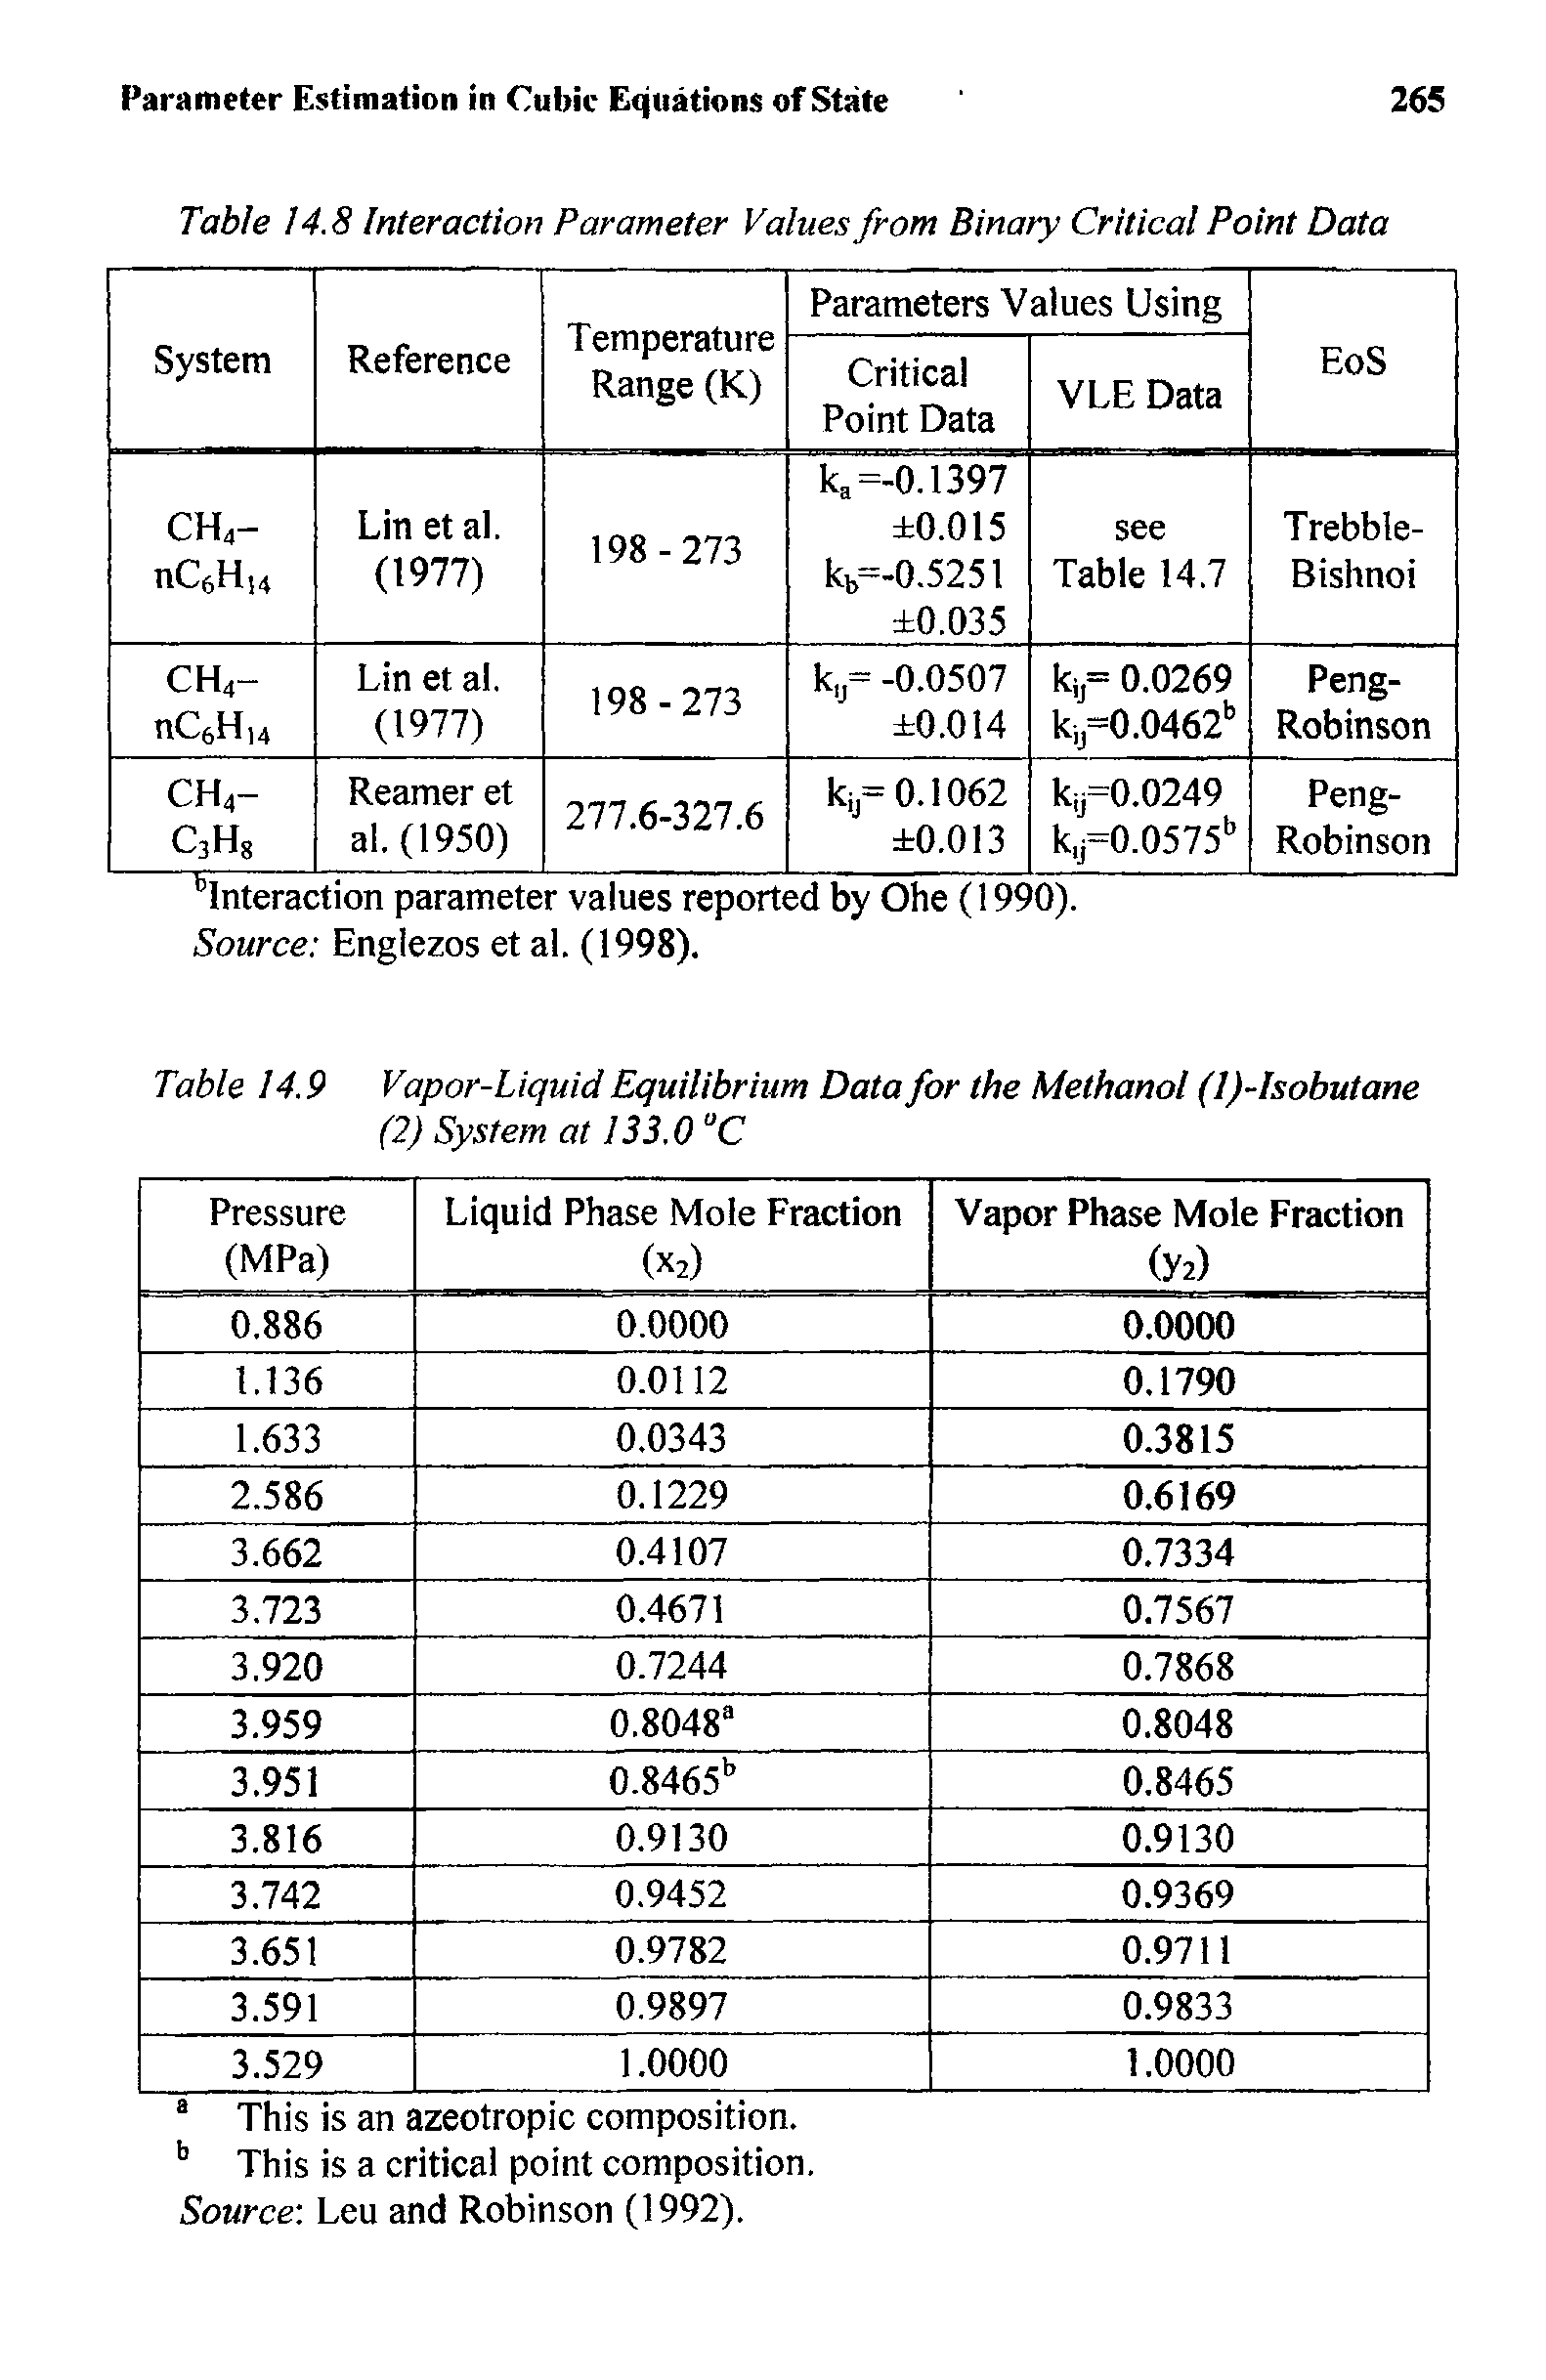 Table 14.9 Vapor-Liquid Equilibrium Data for the Methanol (l)-Isobutane...